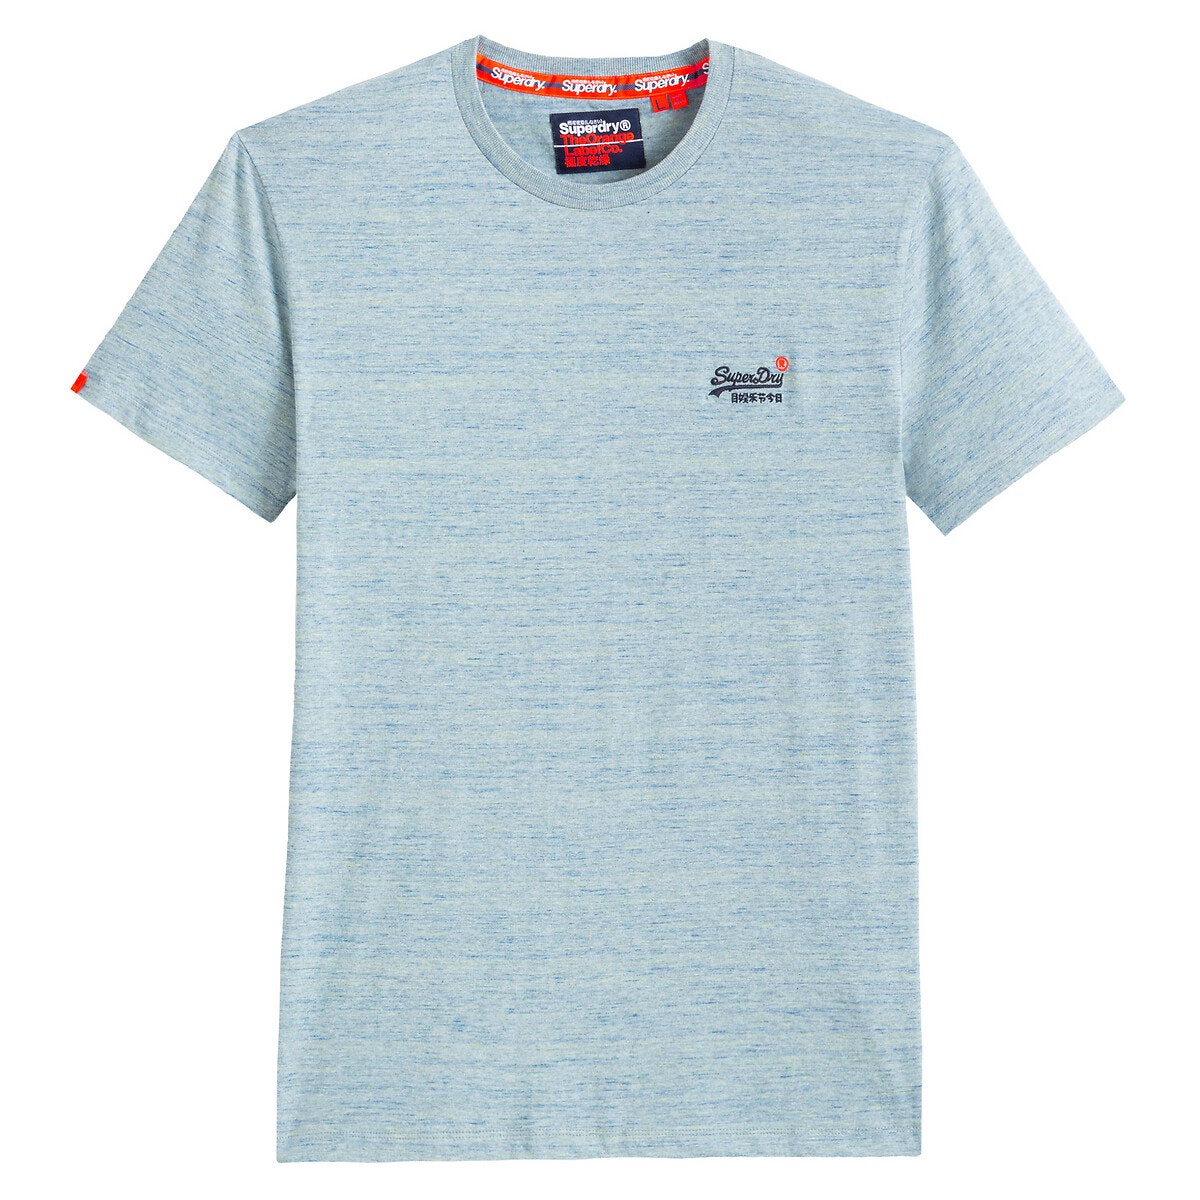 ΑΝΔΡΑΣ | Μπλούζες & Πουκάμισα | T-shirts T-shirt, Orange Label Vintage